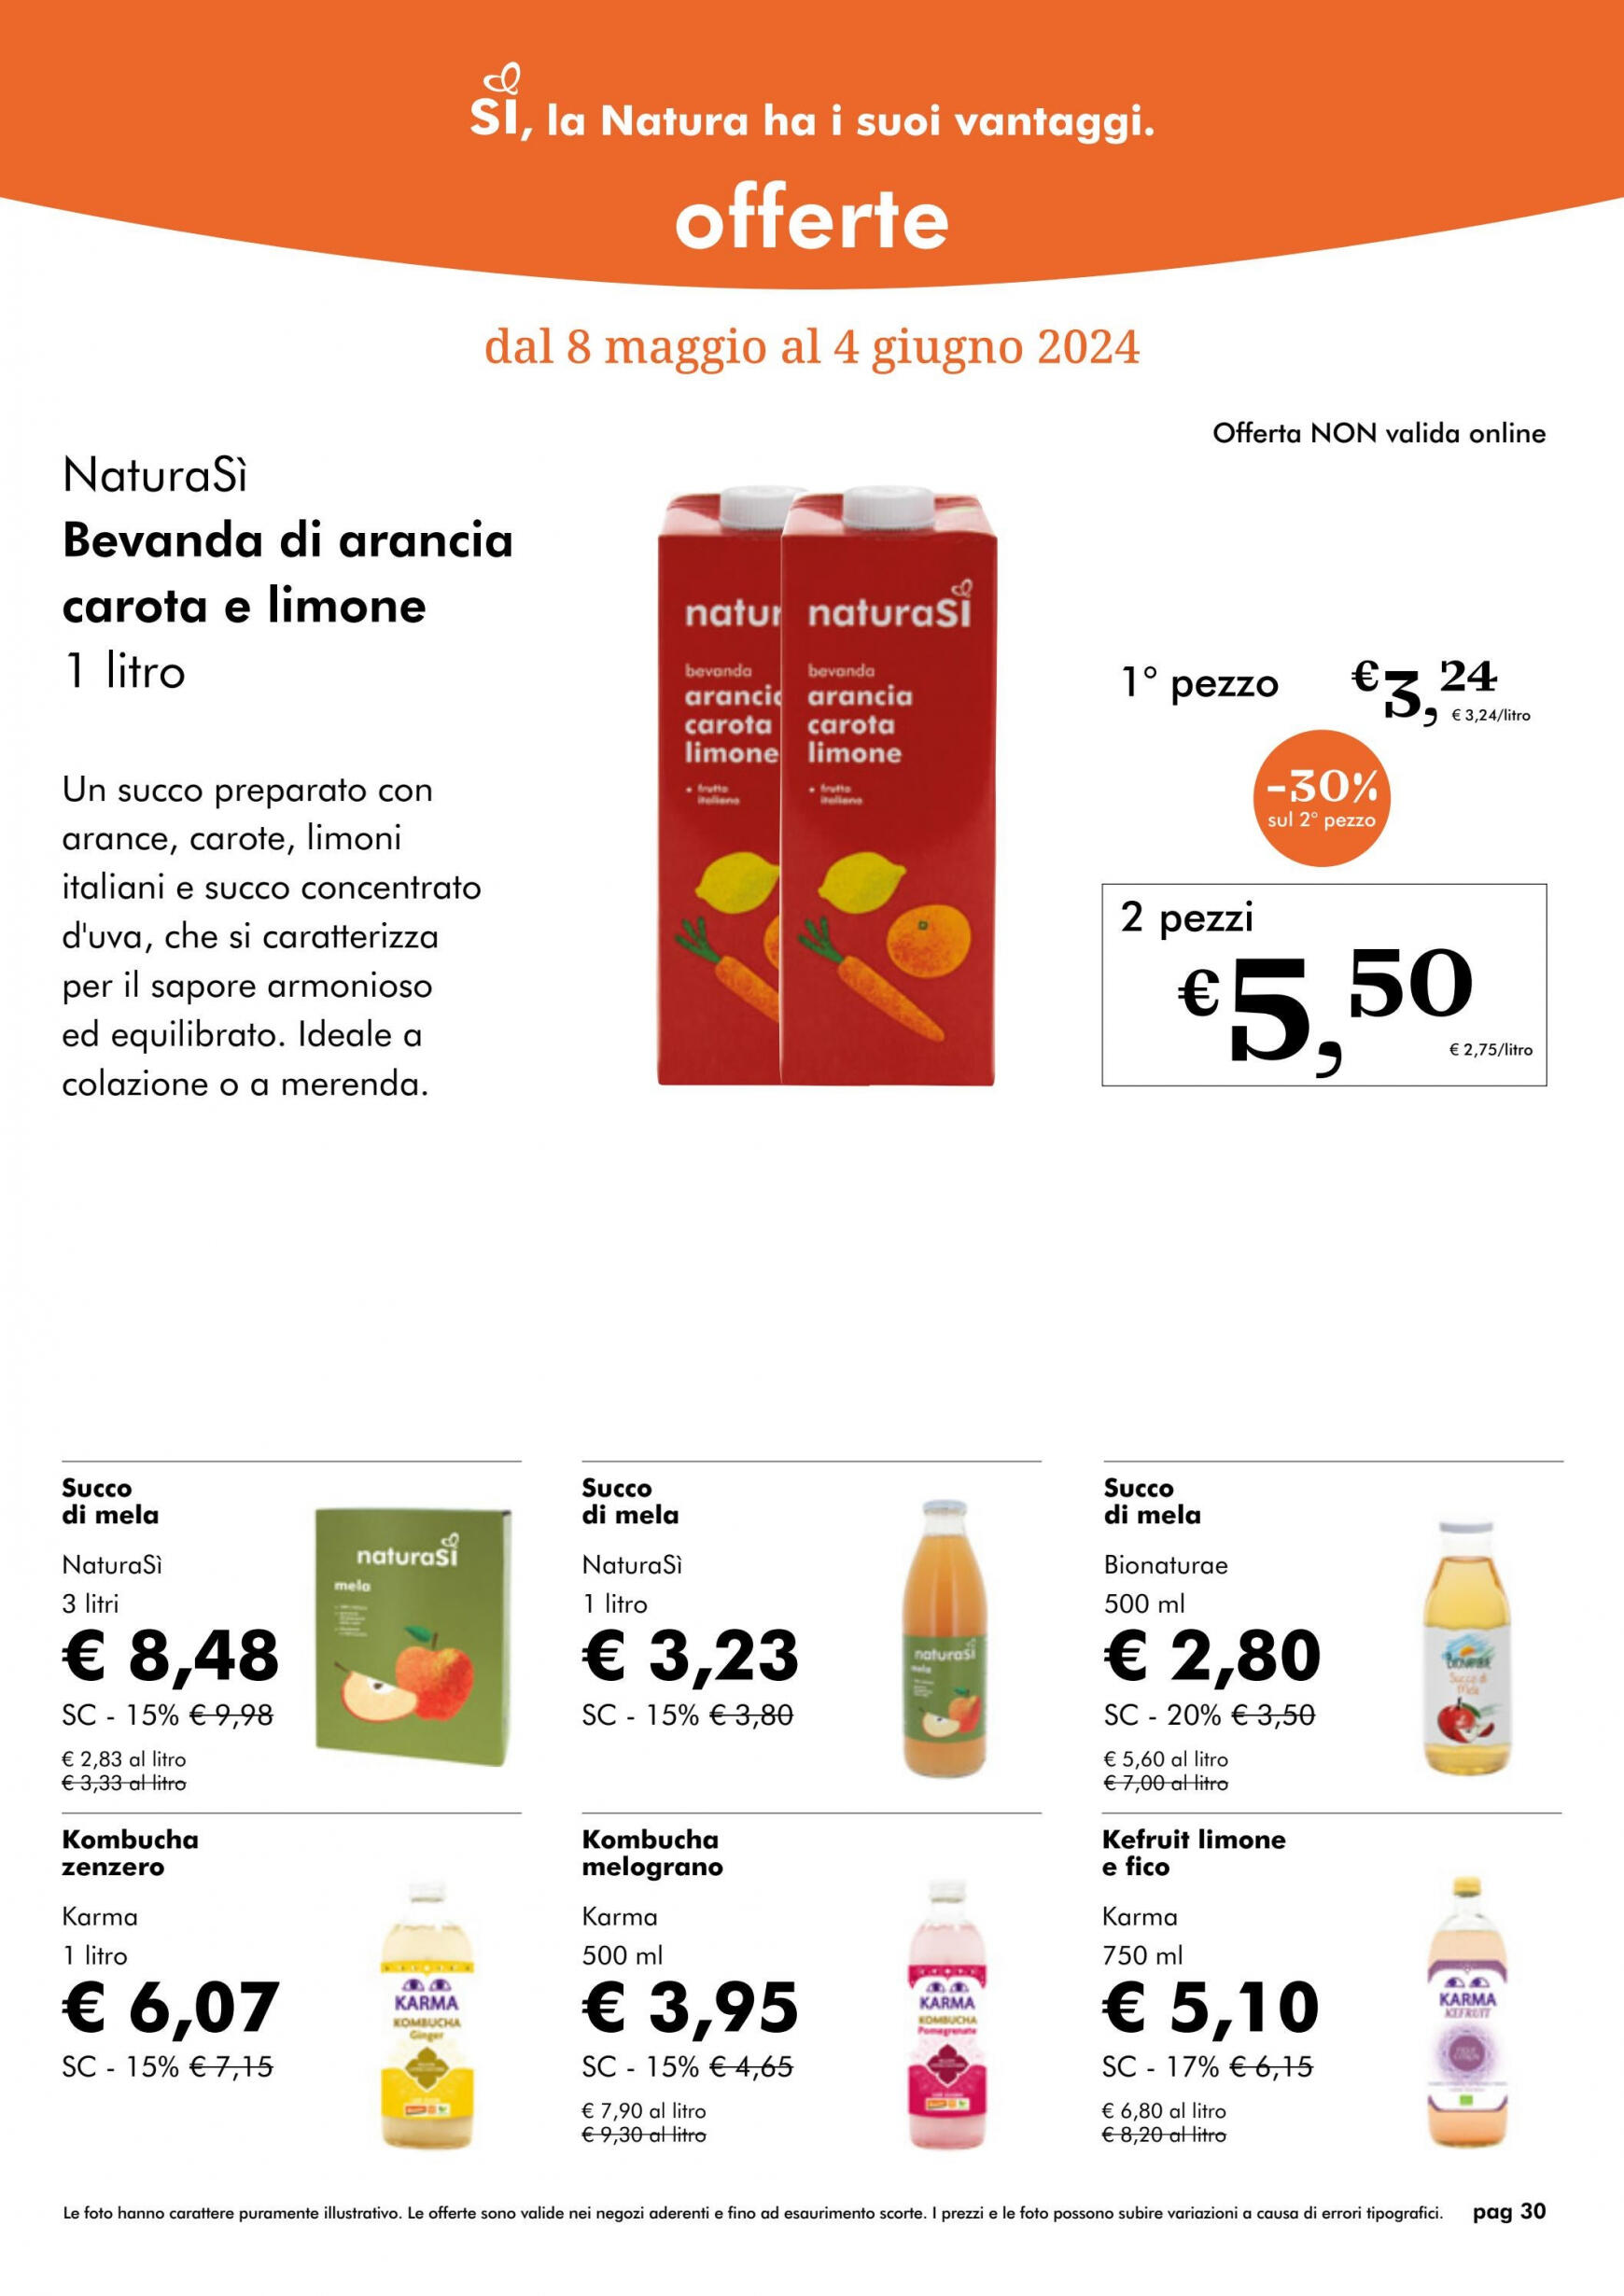 naturasi - Nuovo volantino NaturaSì 08.05. - 04.06. - page: 30